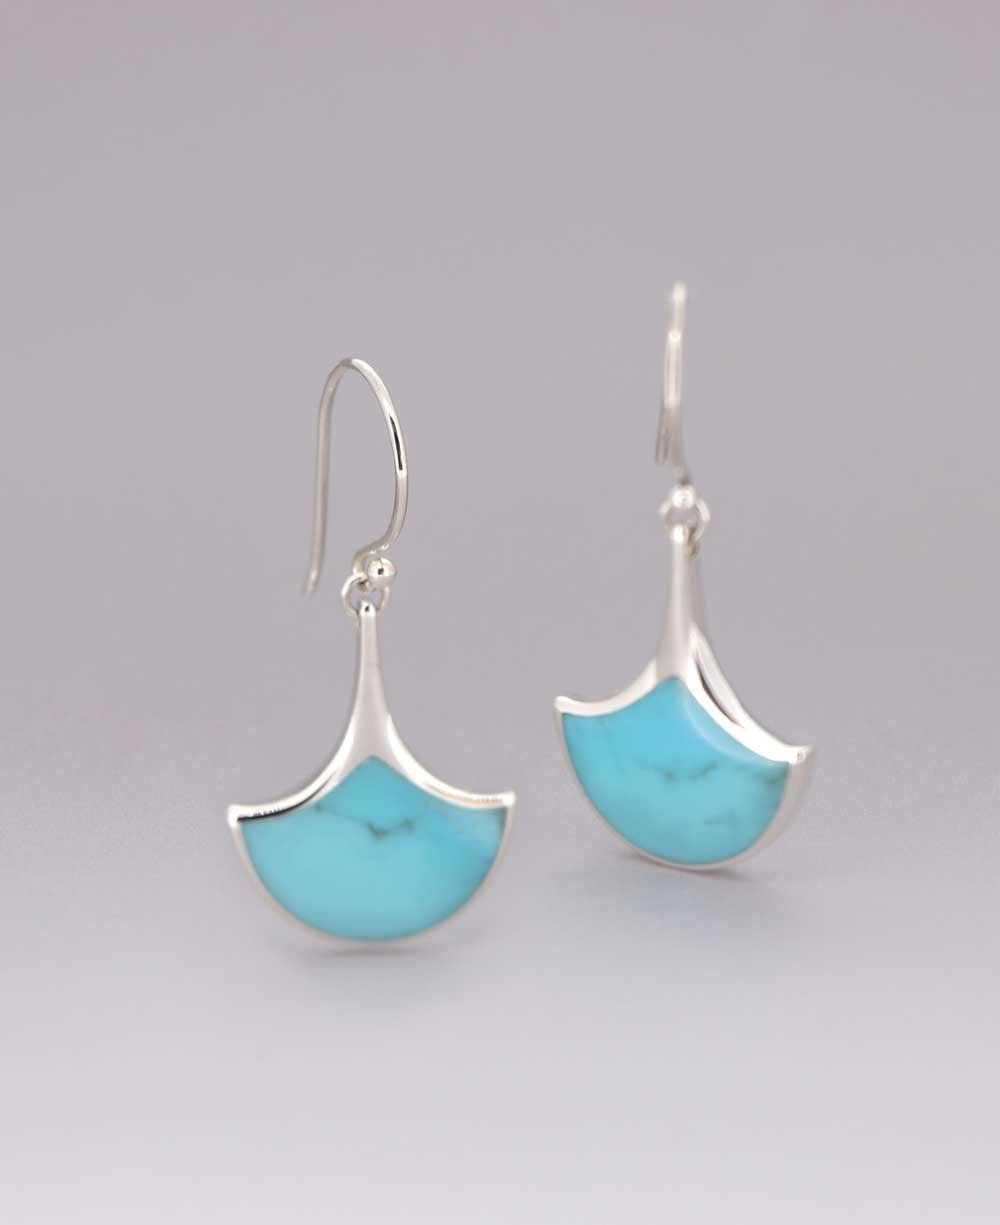 Fan-Shaped Turquoise Inlay Sterling Silver Earrings - Earrings